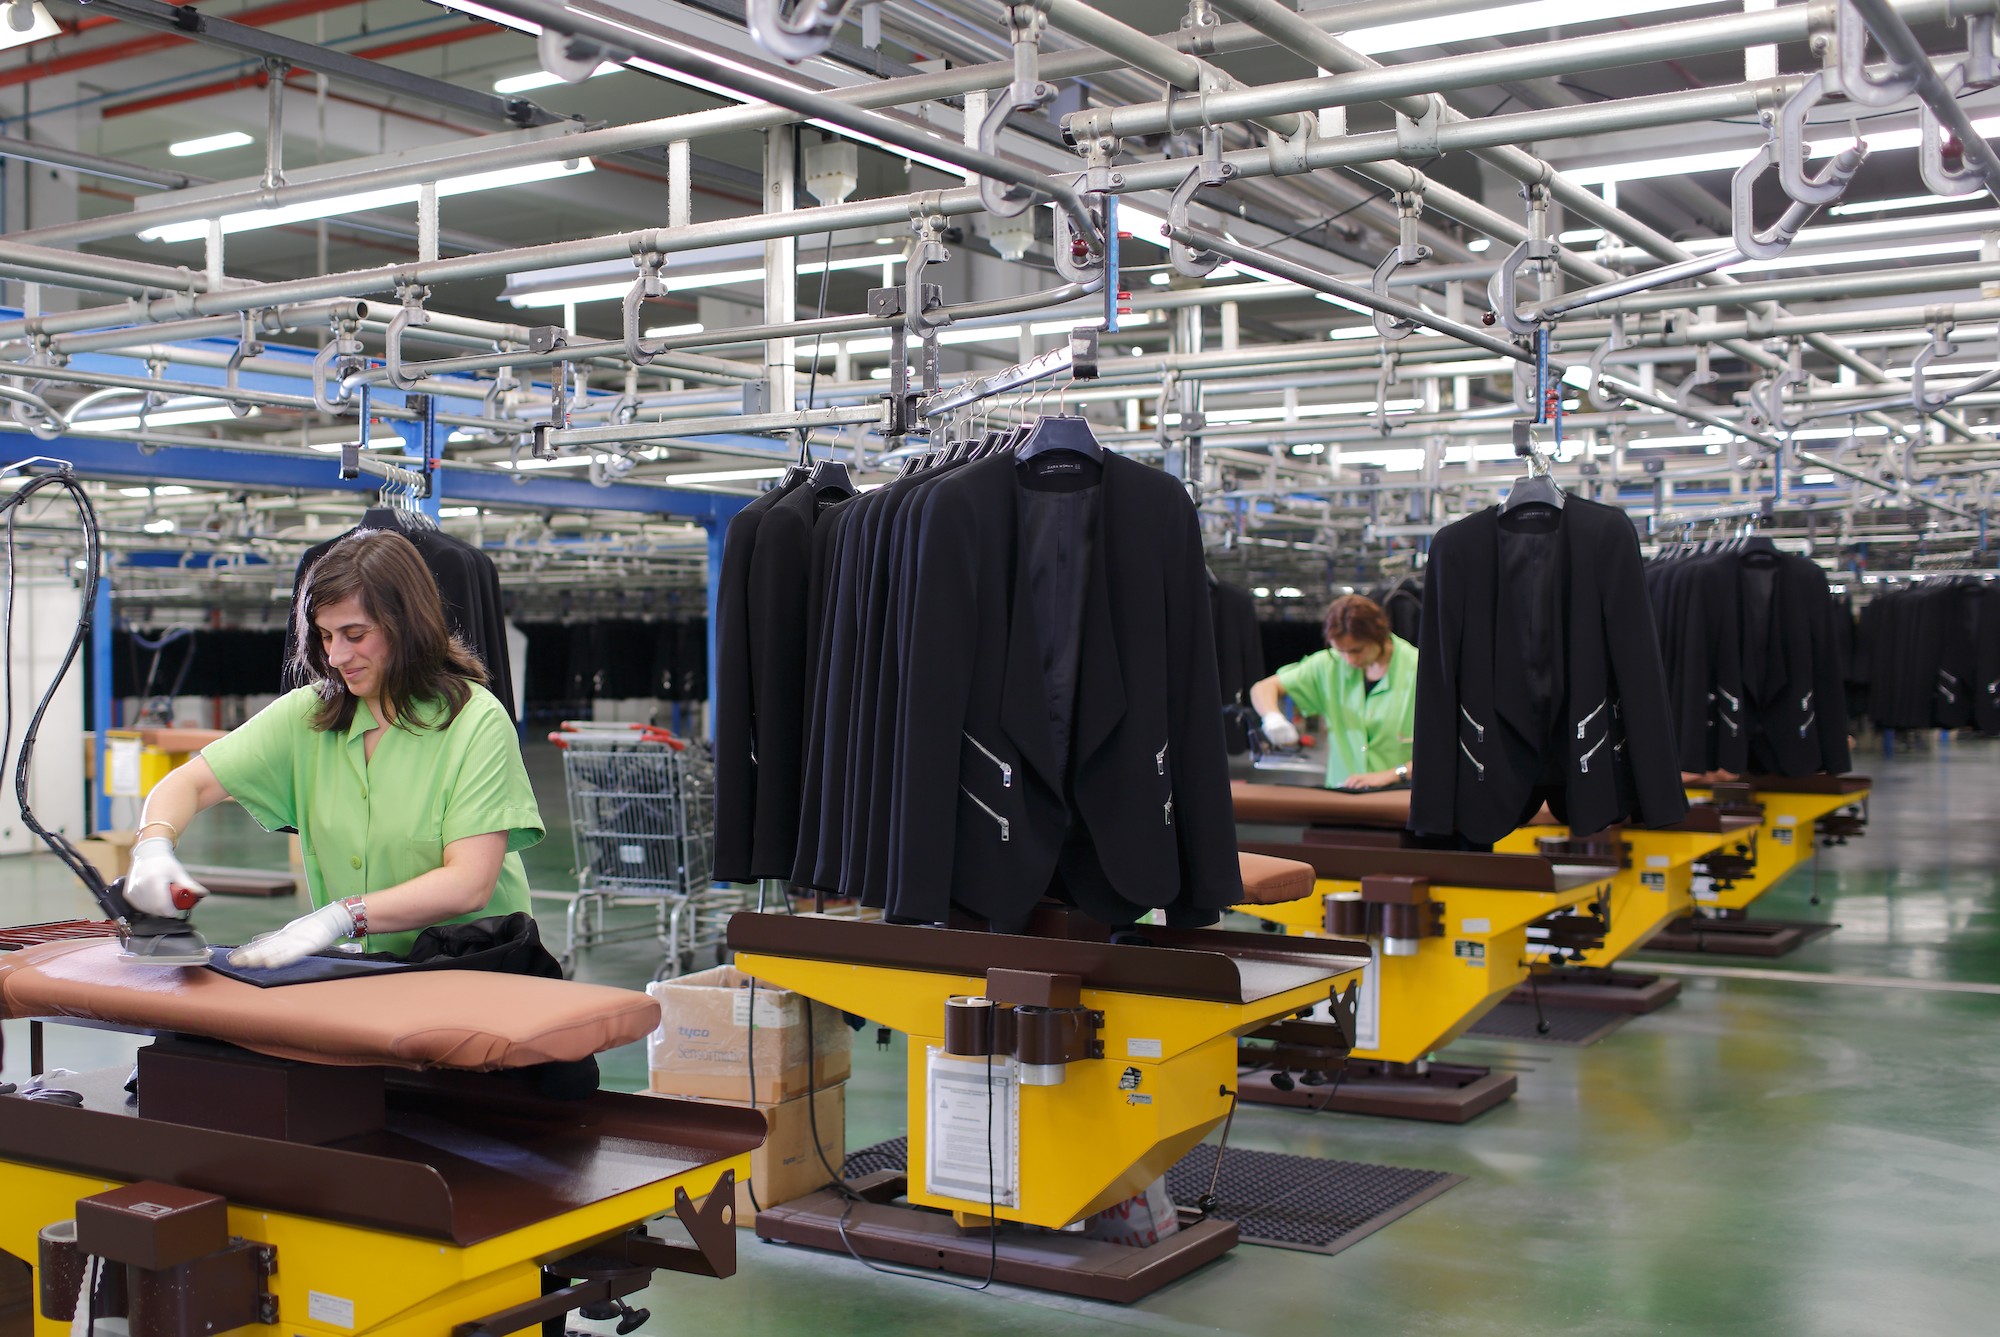 Фабричные бренды. Производство одежды. Фабрика одежды. Швейная промышленность. Швейное производство.